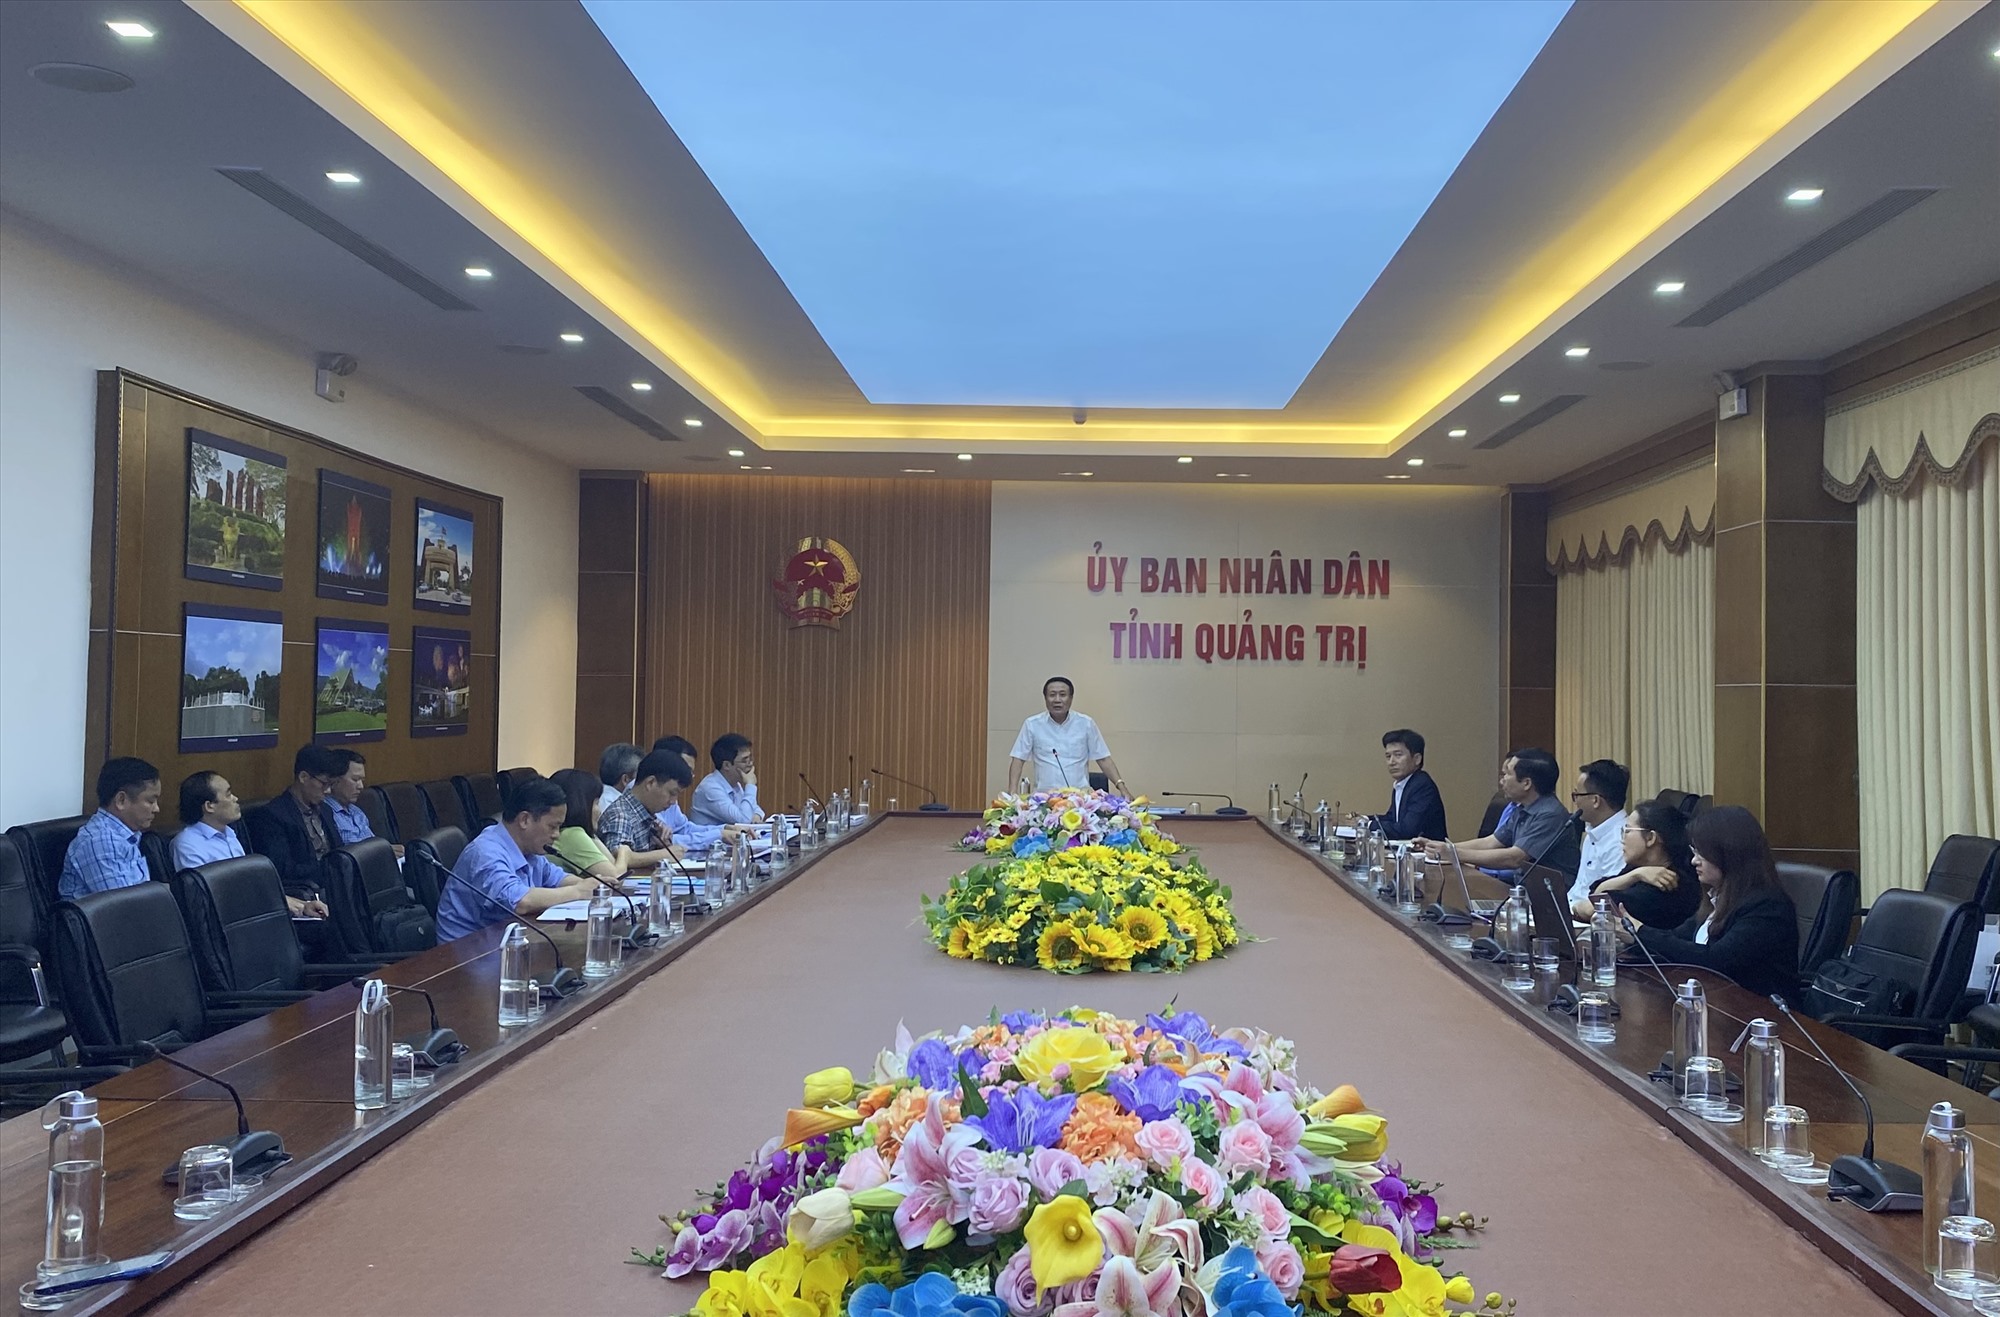 Phó Chủ tịch Thường trực UBND tỉnh Hà Sỹ Đồng yêu cầu Công ty Phương Thảo phối hợp với các ngành, đơn vị đẩy nhanh tiến độ dự án - Ảnh: N.B